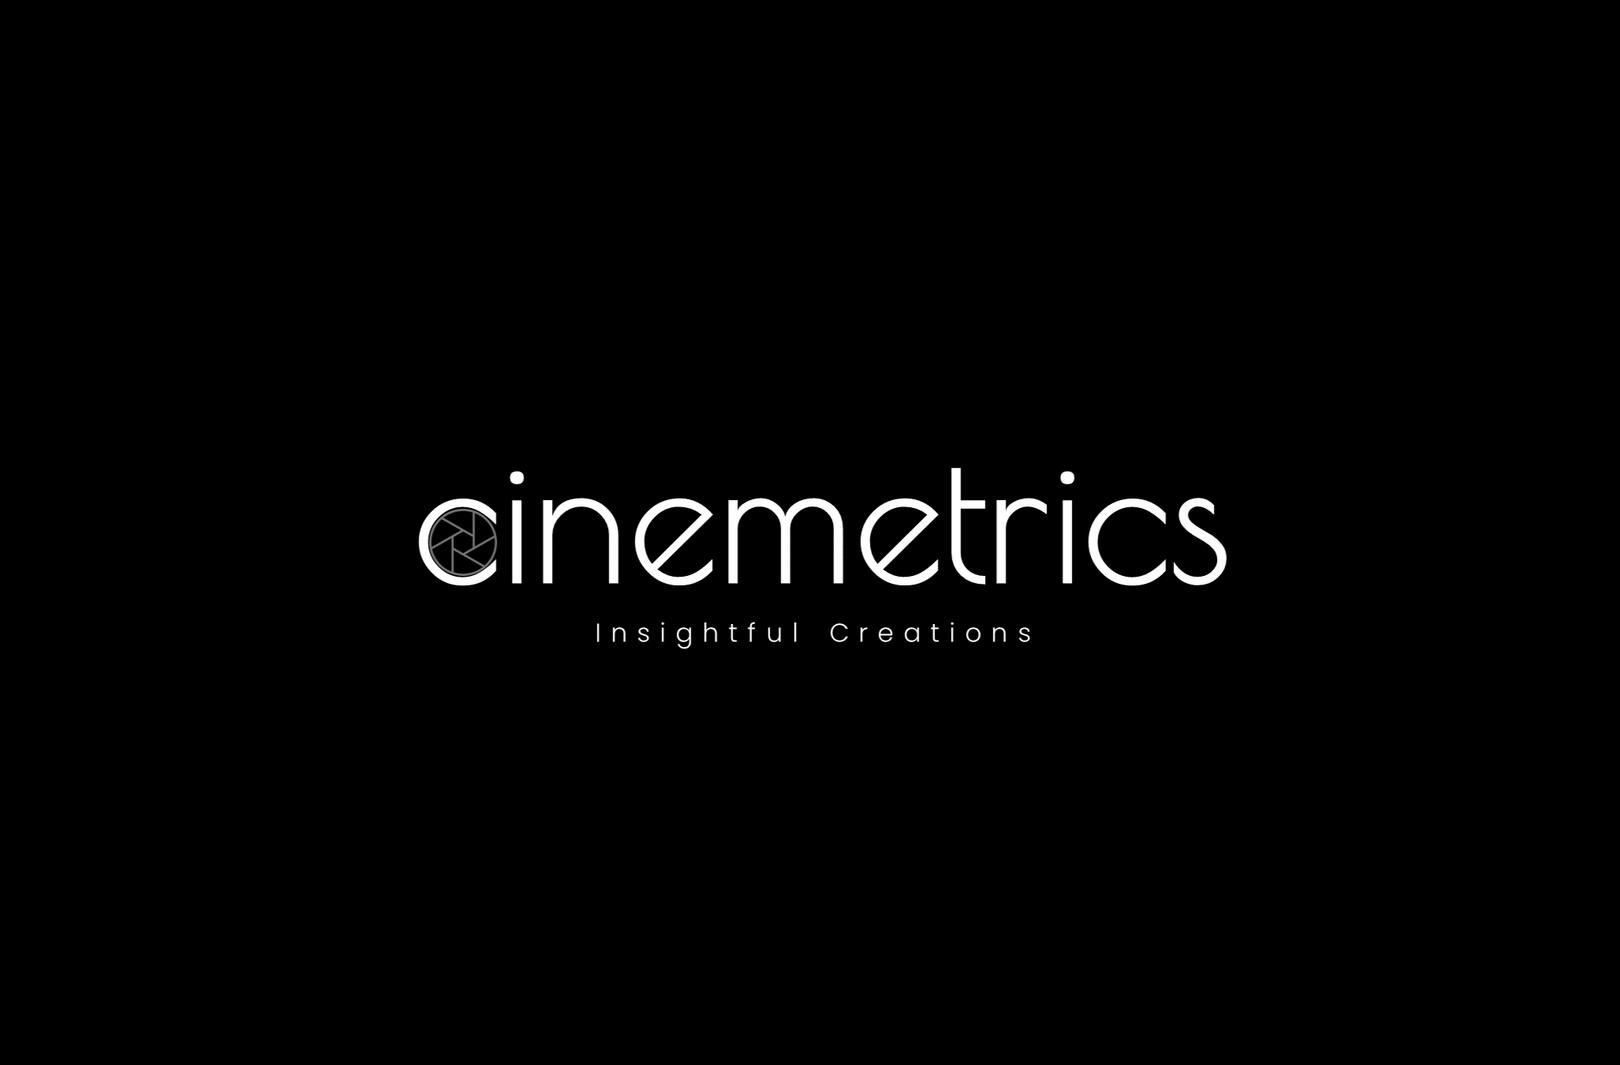 Cinemetrics